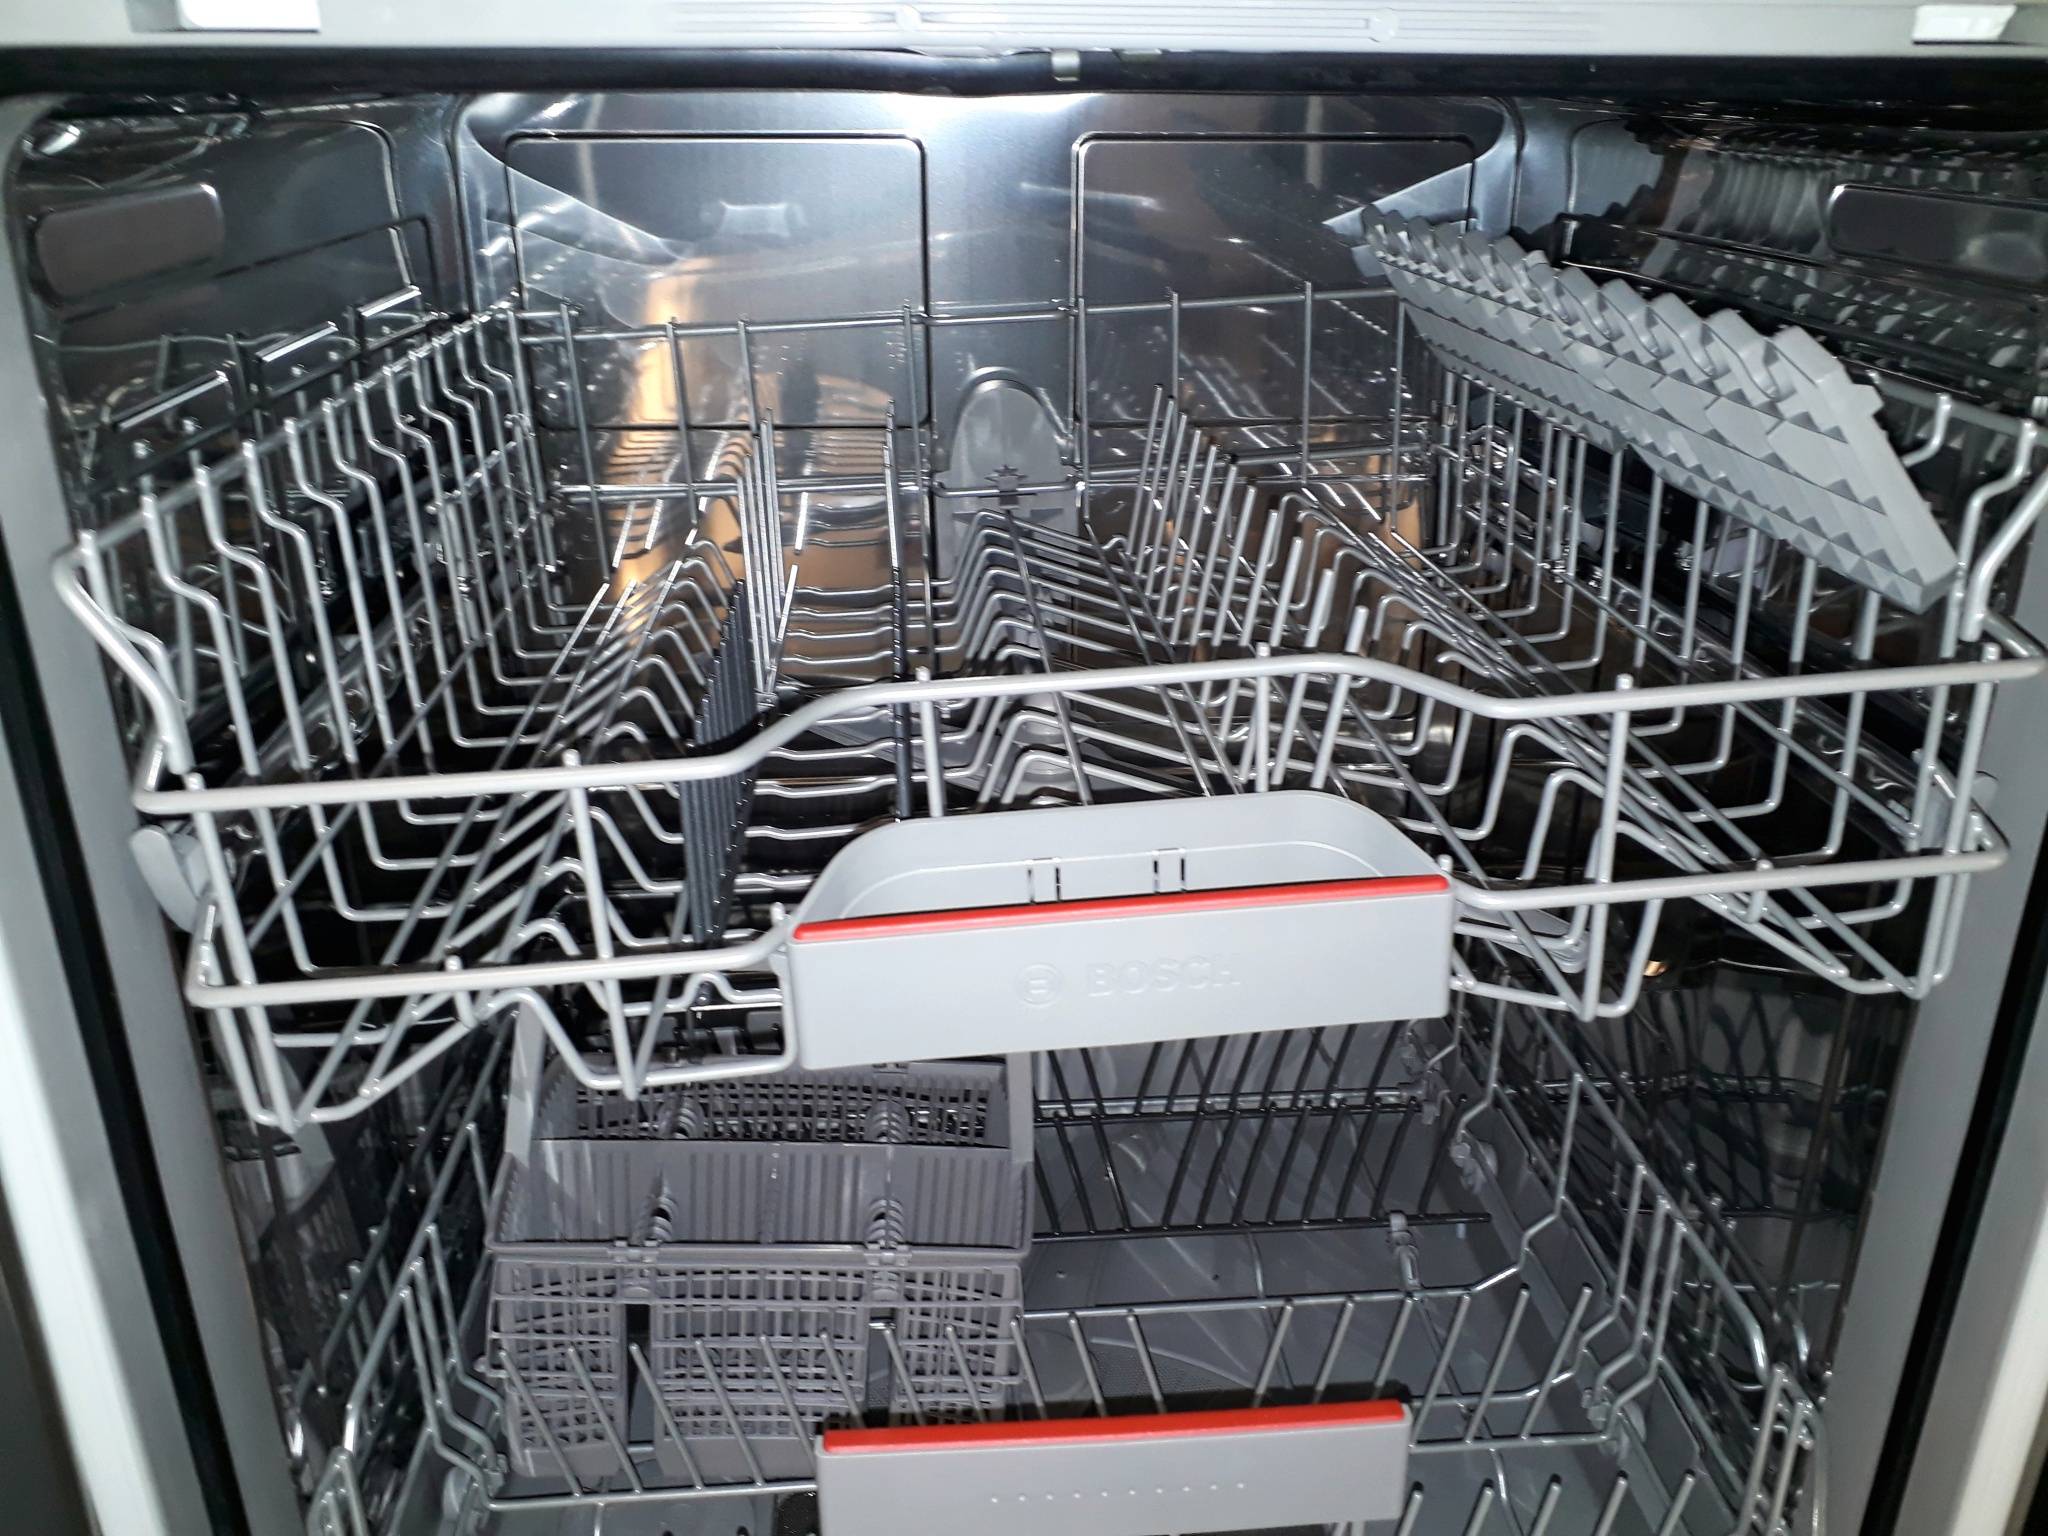 Запчасти для посудомоечных машин — обзор, где искать + как выбрать качественные